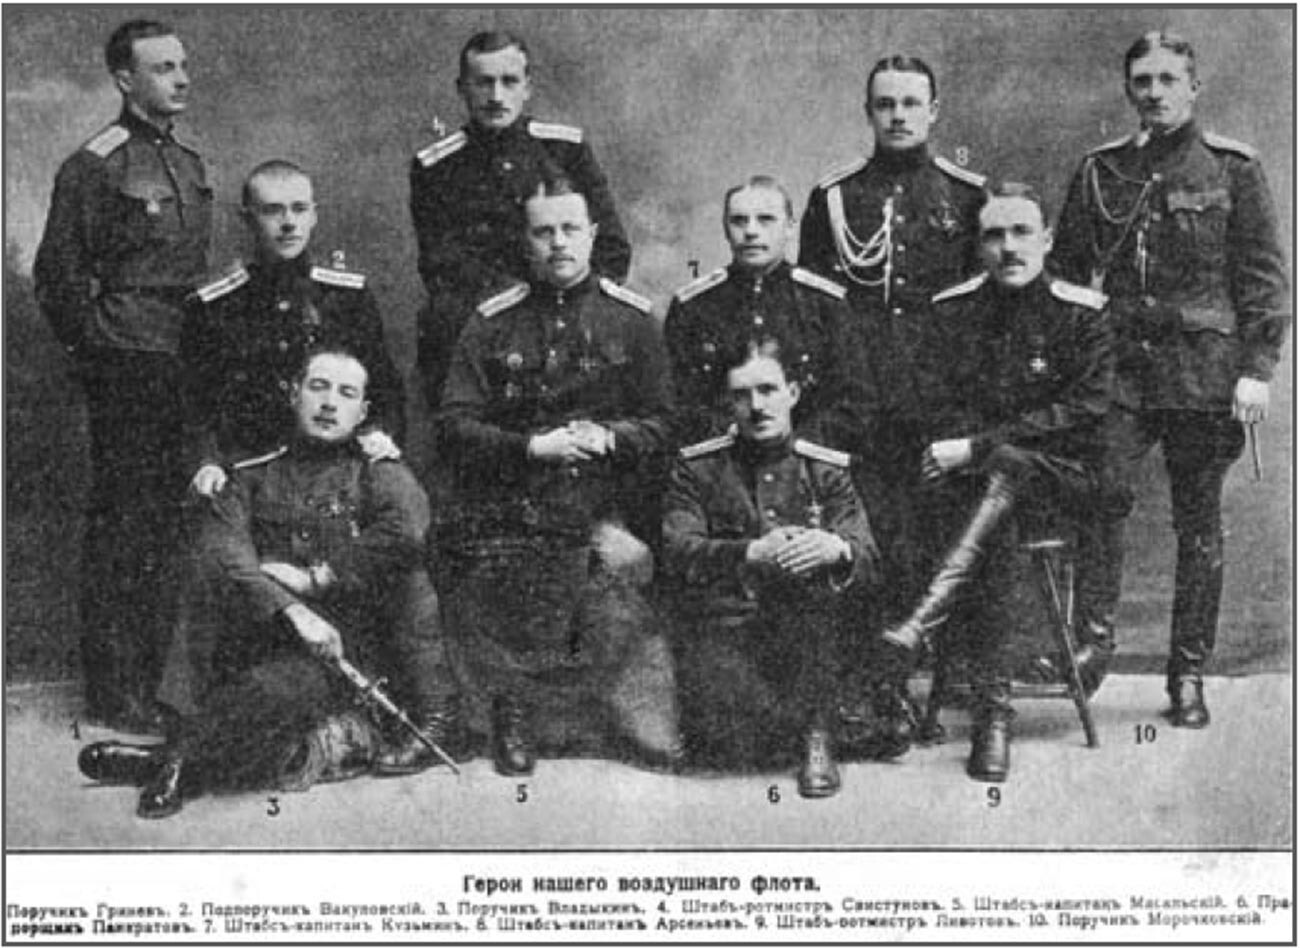 Una foto de los pilotos héroes rusos. Se puede ver a Onisim Pankratov en la primera fila (centro), sentado en el suelo